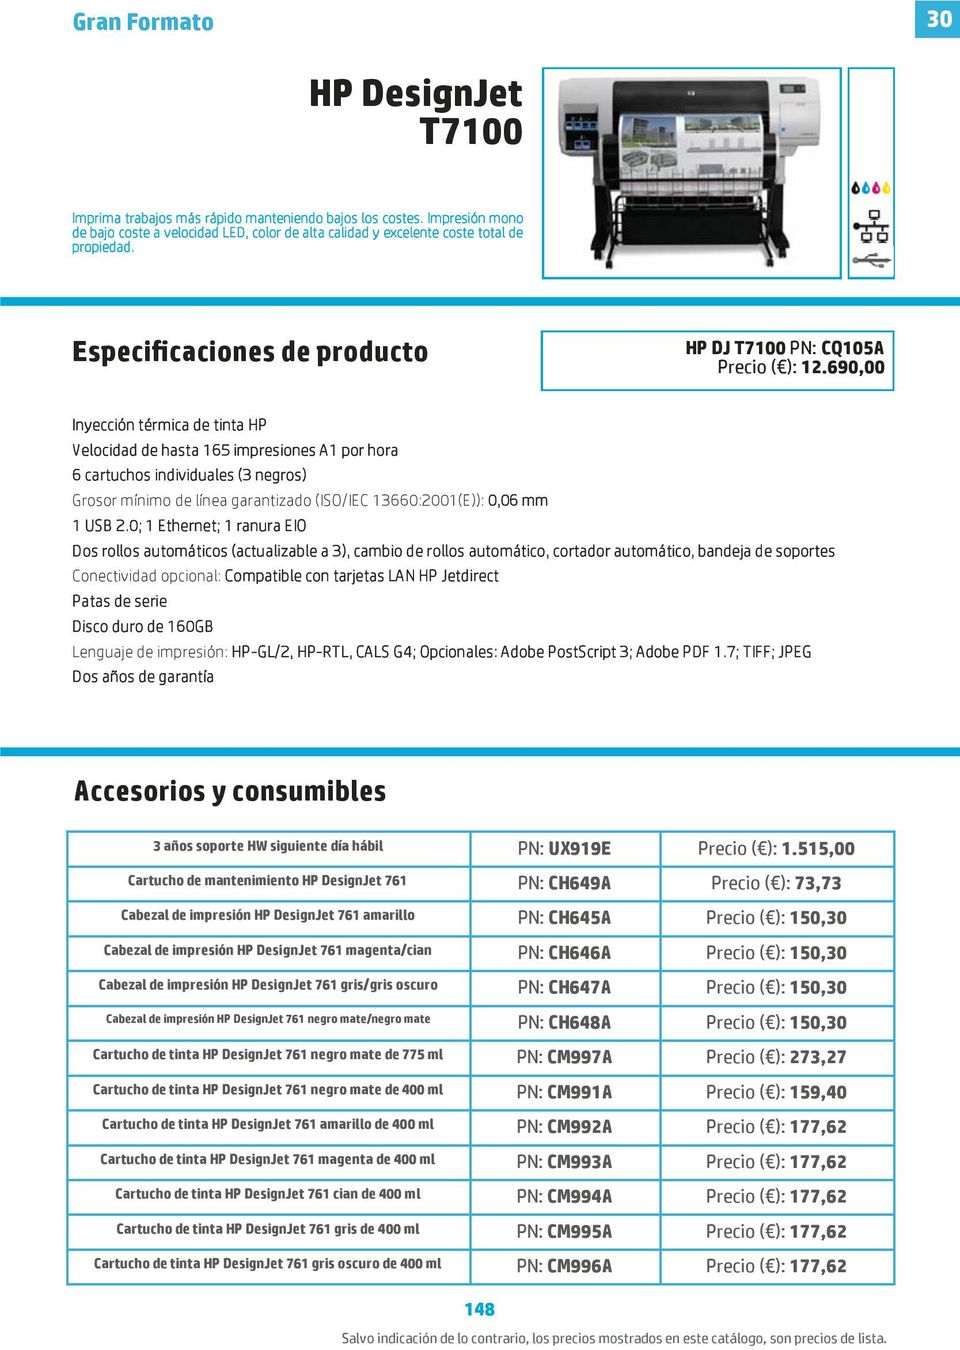 690,00 Inyección térmica de tinta HP Velocidad de hasta 165 impresiones A1 por hora 6 cartuchos individuales (3 negros) Grosor mínimo de línea garantizado (ISO/IEC 13660:2001(E)): 0,06 mm 1 USB 2.